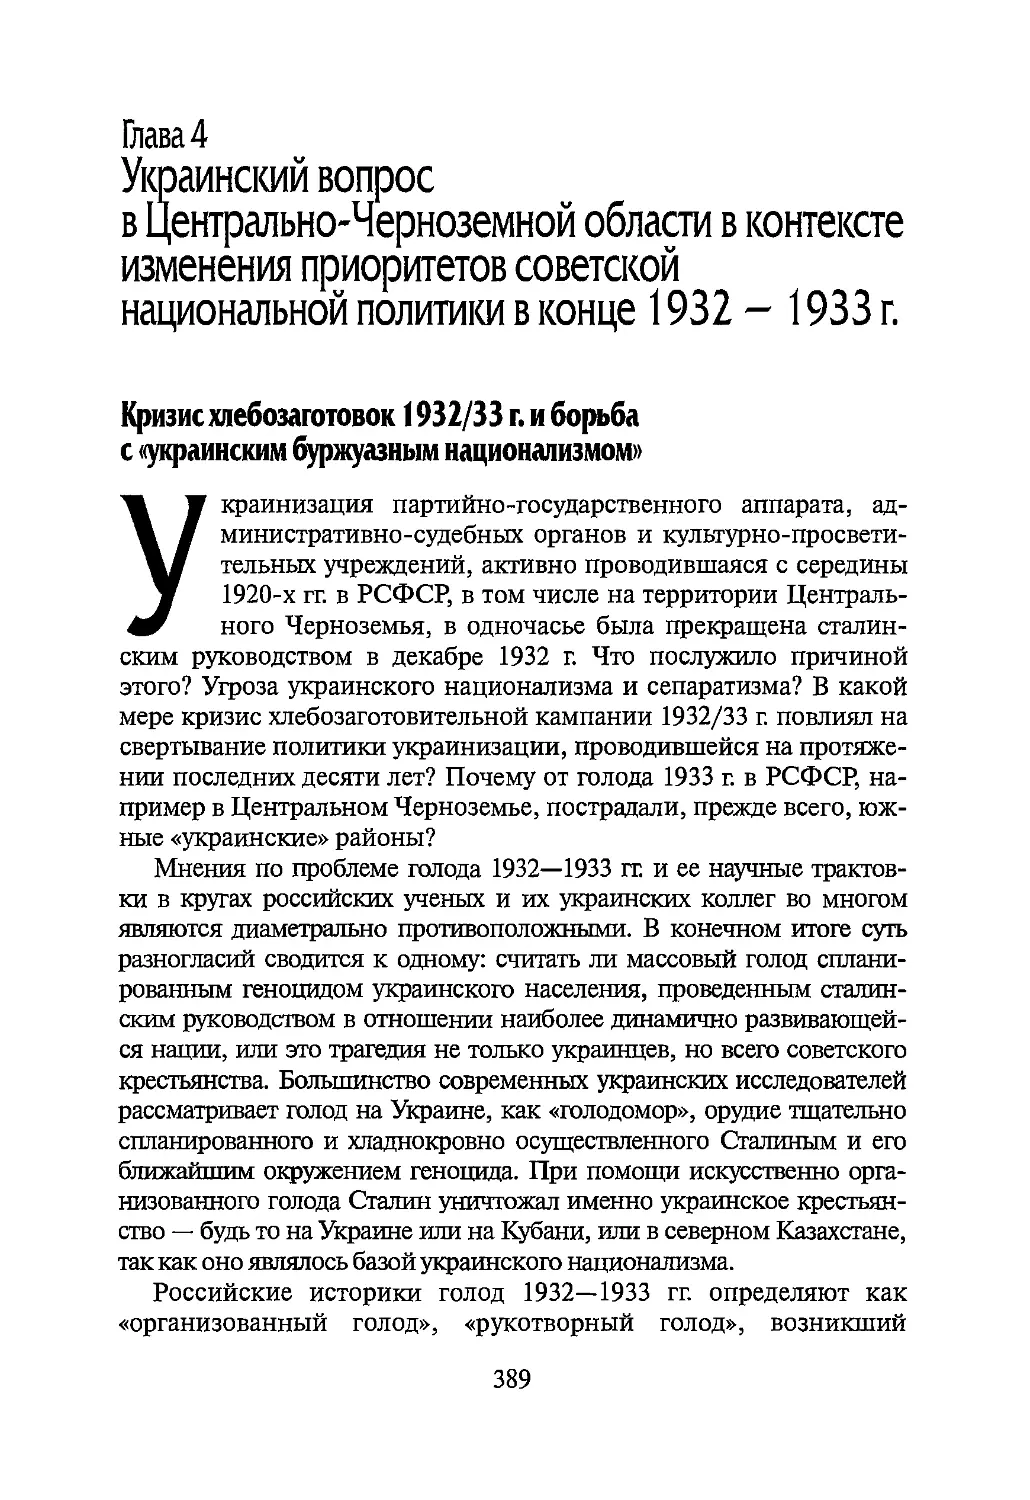 Глава 4. Украинский вопрос в Центрально-Черноземной области в контексте изменения приоритетов советской национальной политики в конце 1932 — 1933 г